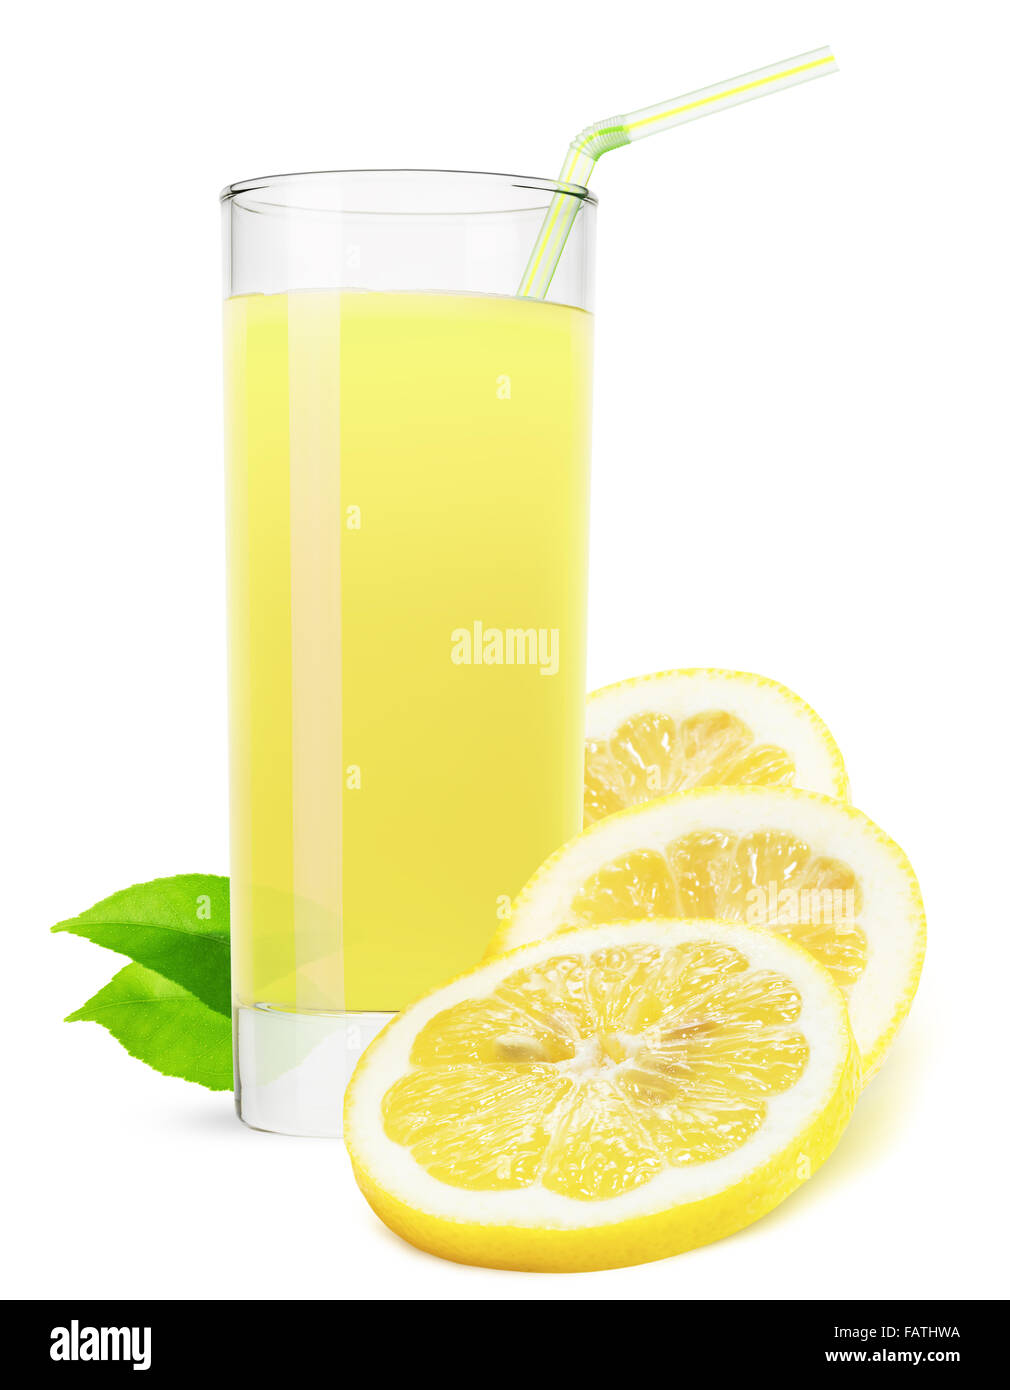 Vaso de jugo de limón aislado sobre fondo blanco. Foto de stock